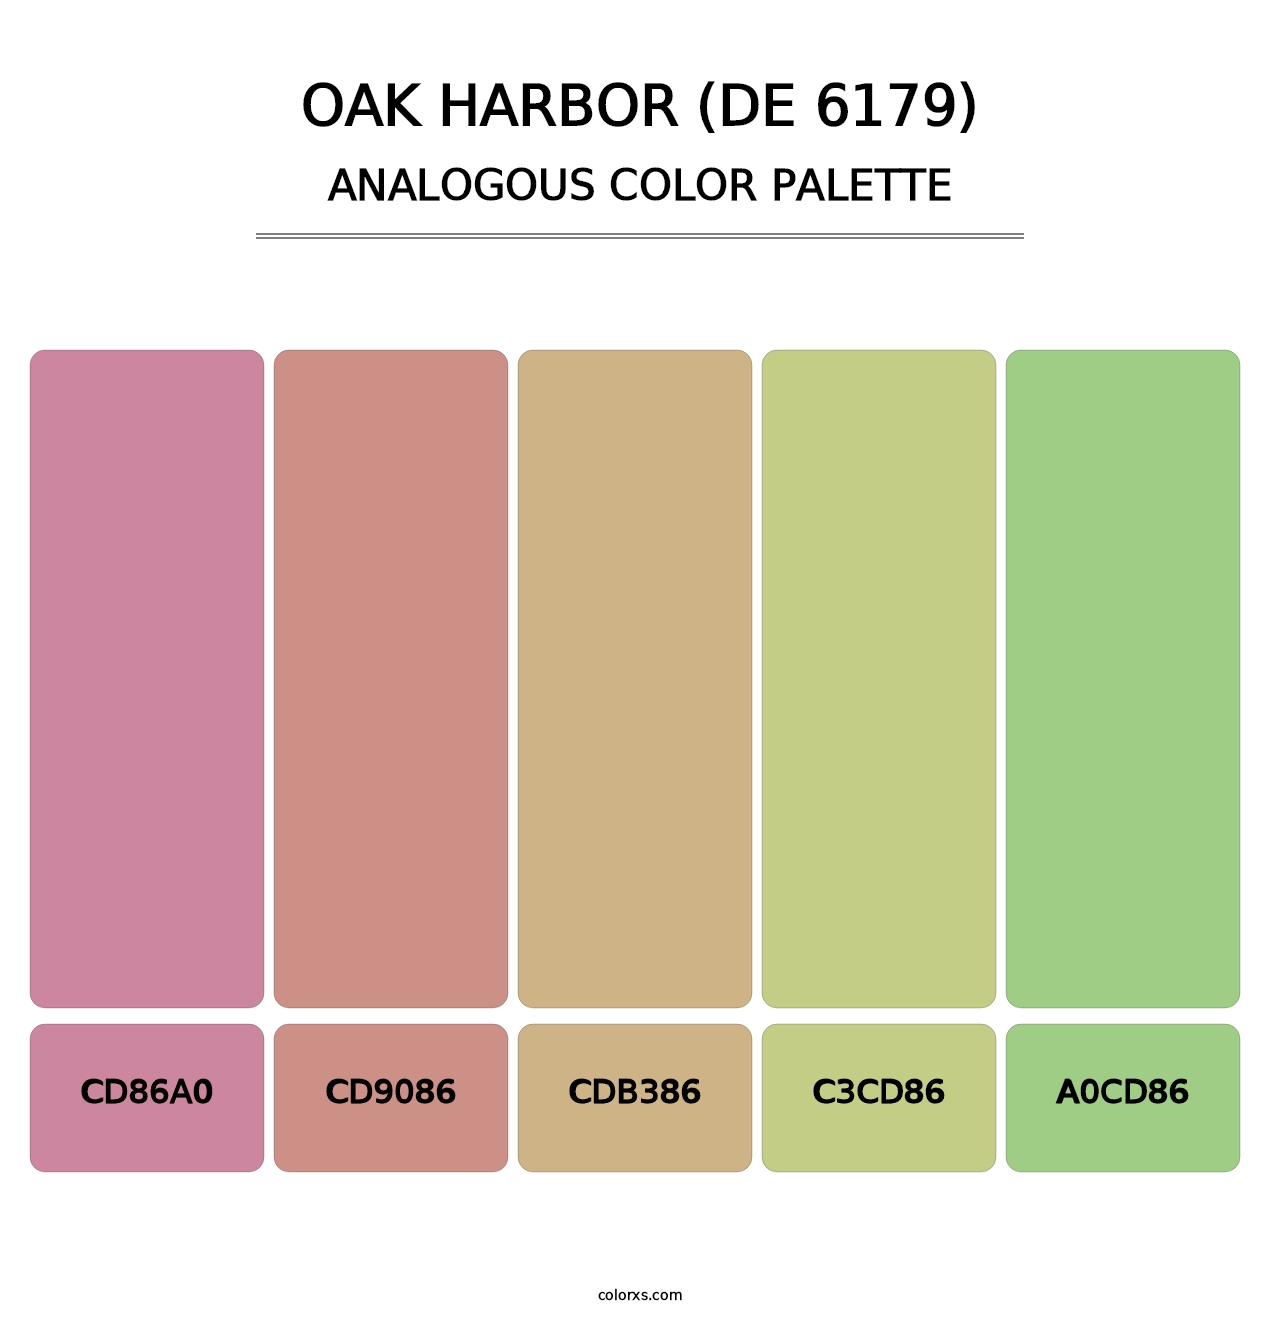 Oak Harbor (DE 6179) - Analogous Color Palette